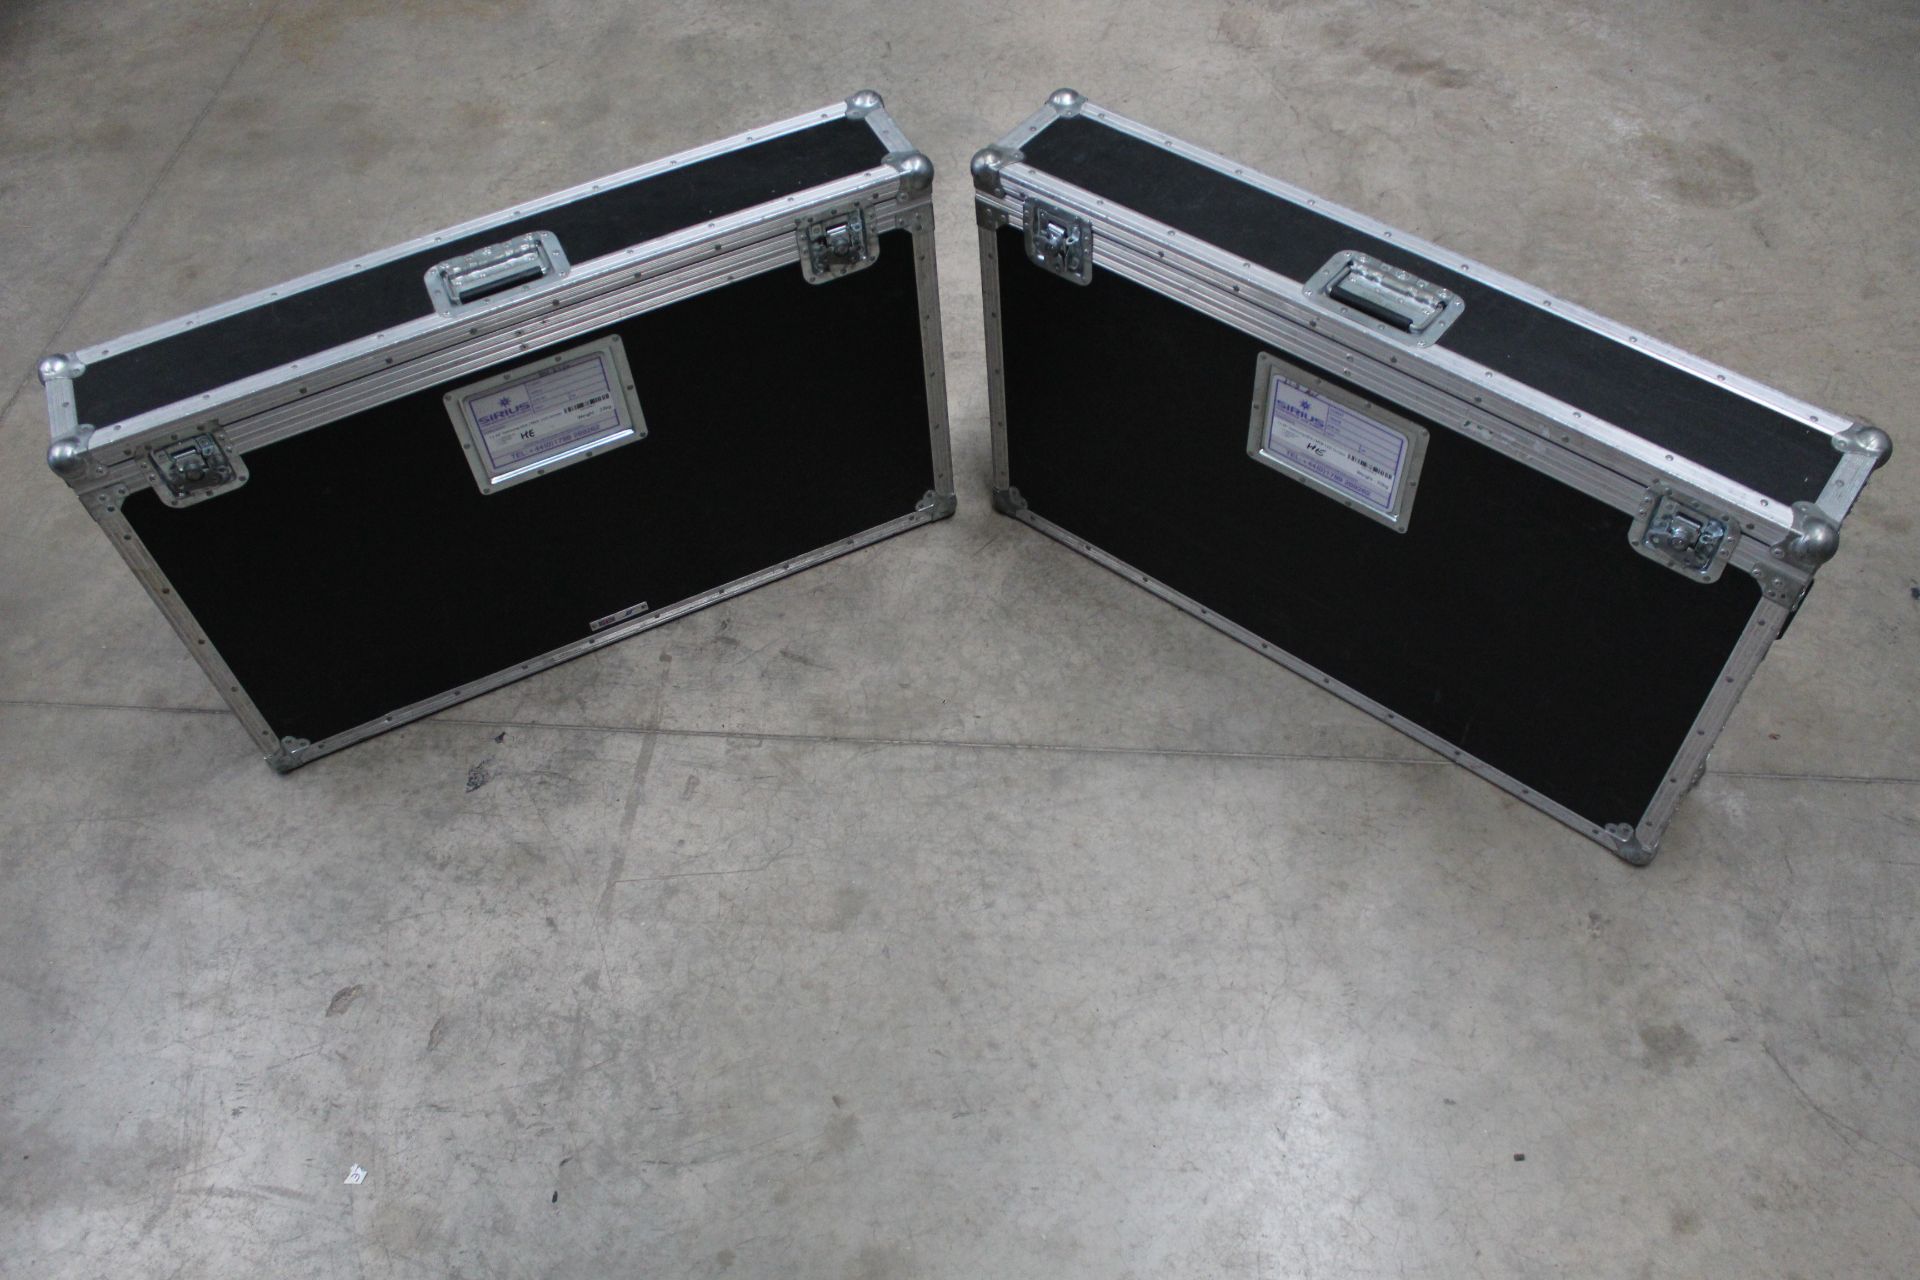 2x Single 40" screen flight cases, approx. 1040mm (l) x 180mm (w) x 630mm (h)